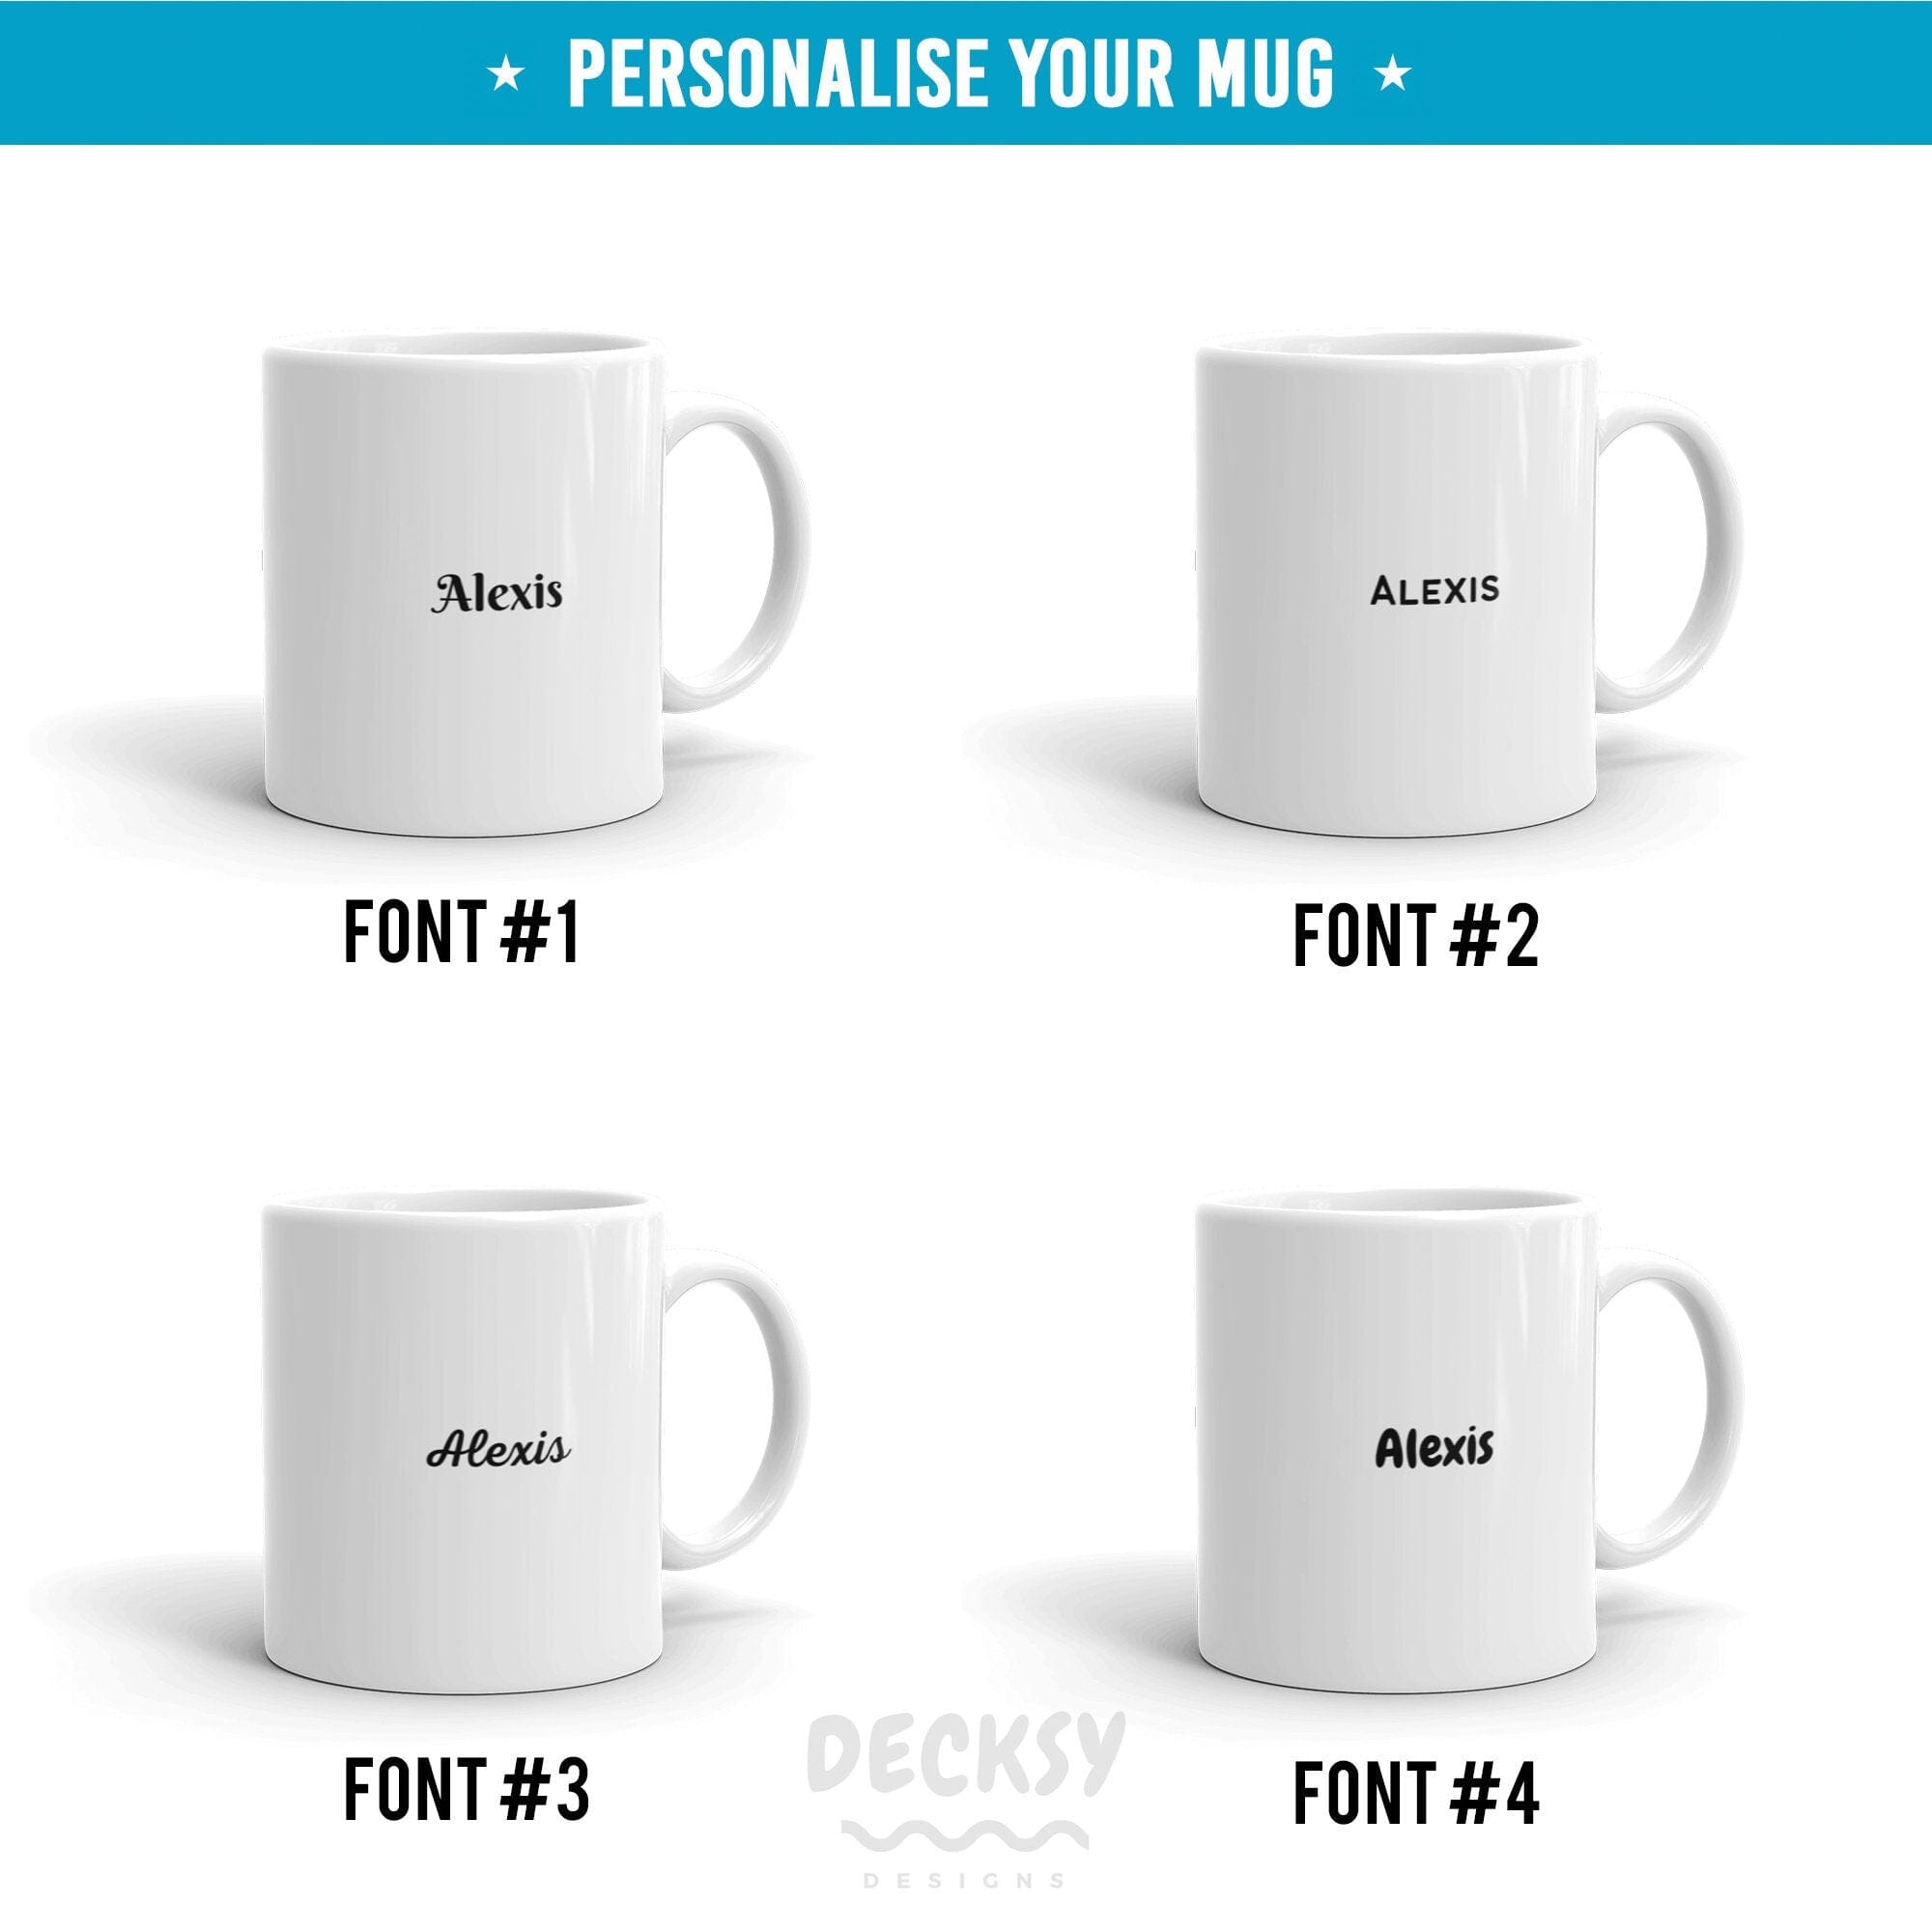 Pitbull Coffee Mug, Pitbull Owner Gift-Home & Living:Kitchen & Dining:Drink & Barware:Drinkware:Mugs-DecksyDesigns-White Mug 11 oz-NO PERSONALISATION-DecksyDesigns